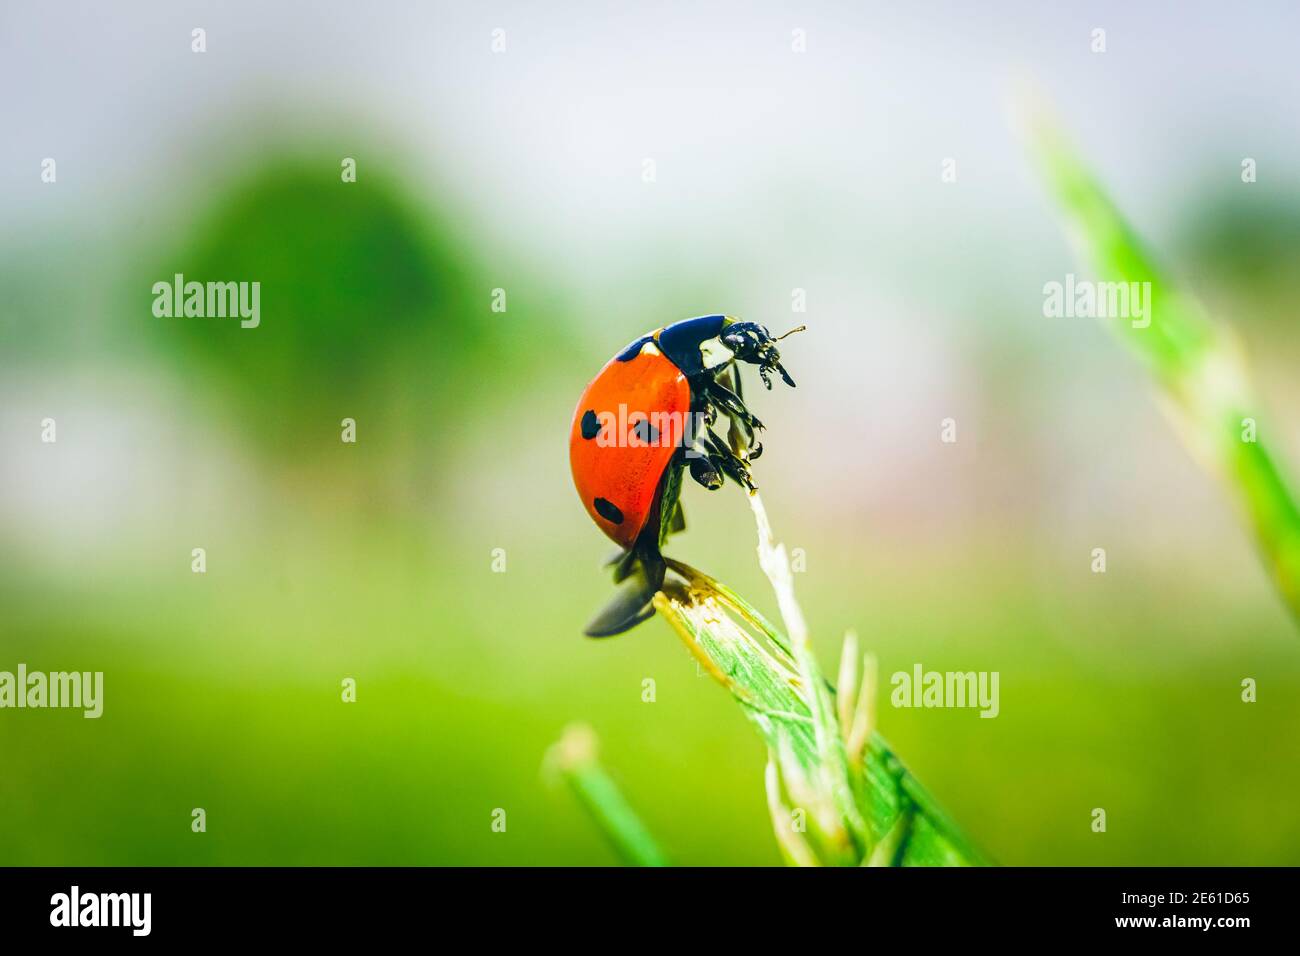 Ladybug isolated on green leaf. Nature background. Stock Photo